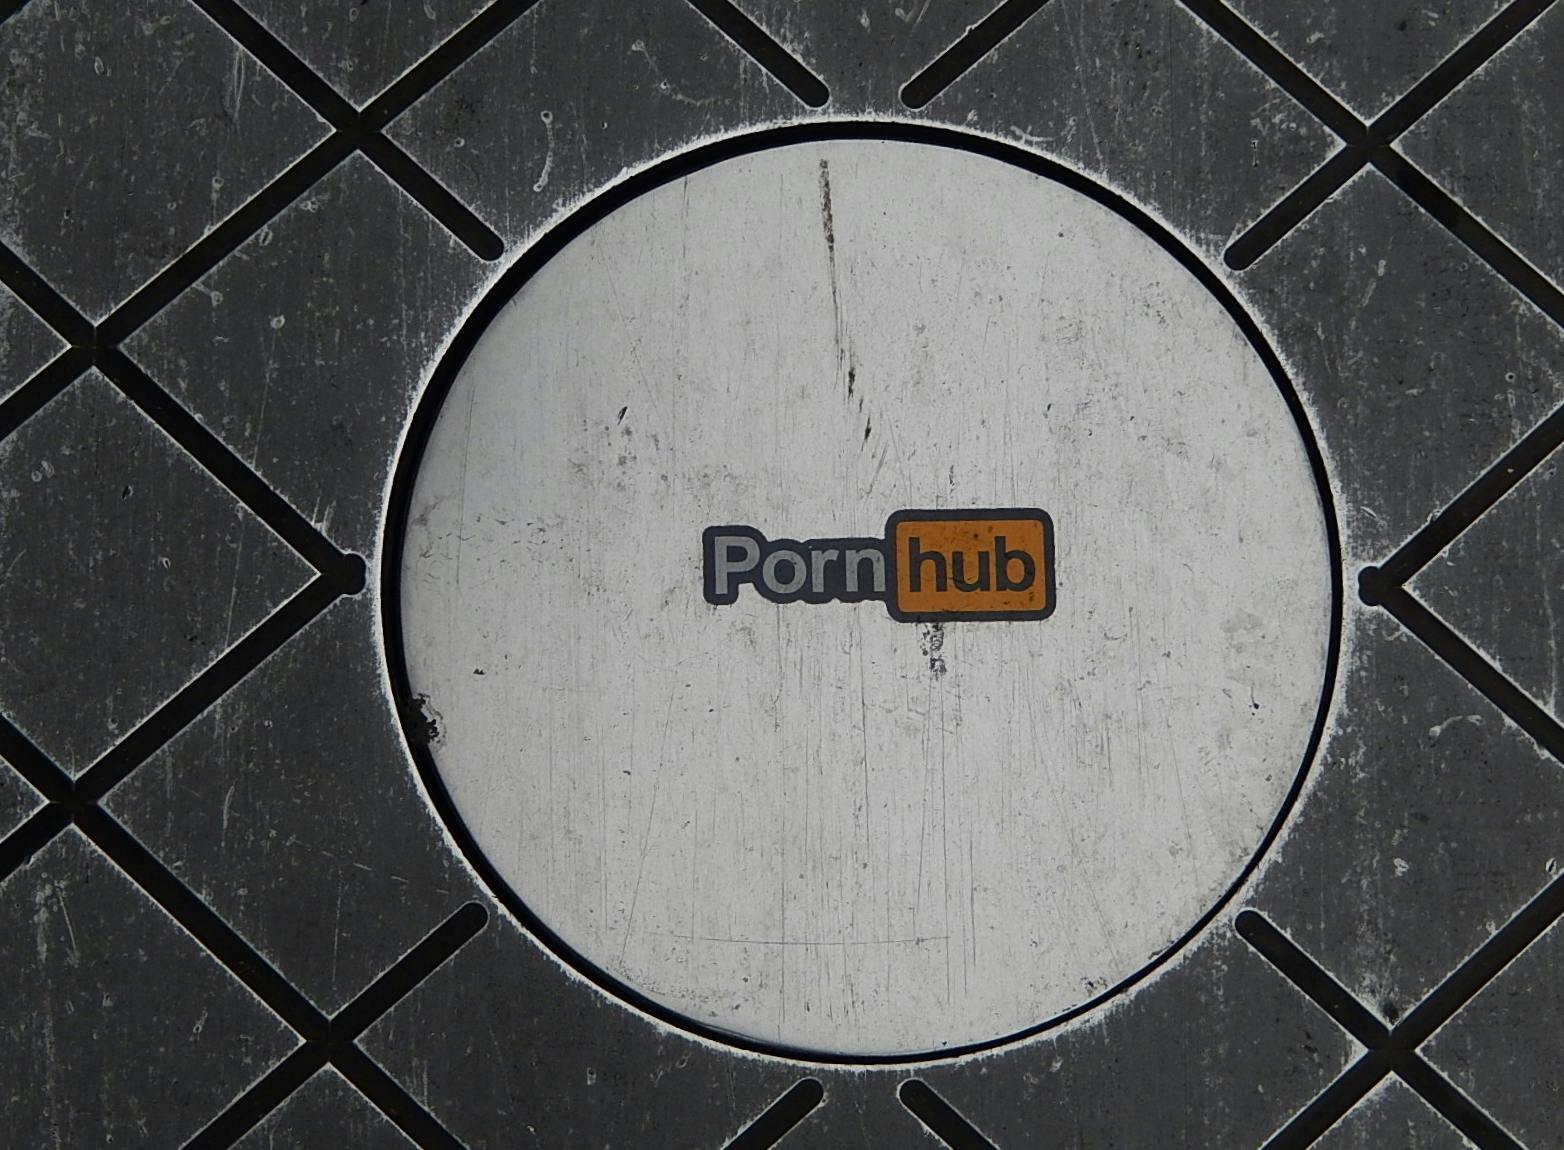 Pornhub Tumblr Acquired